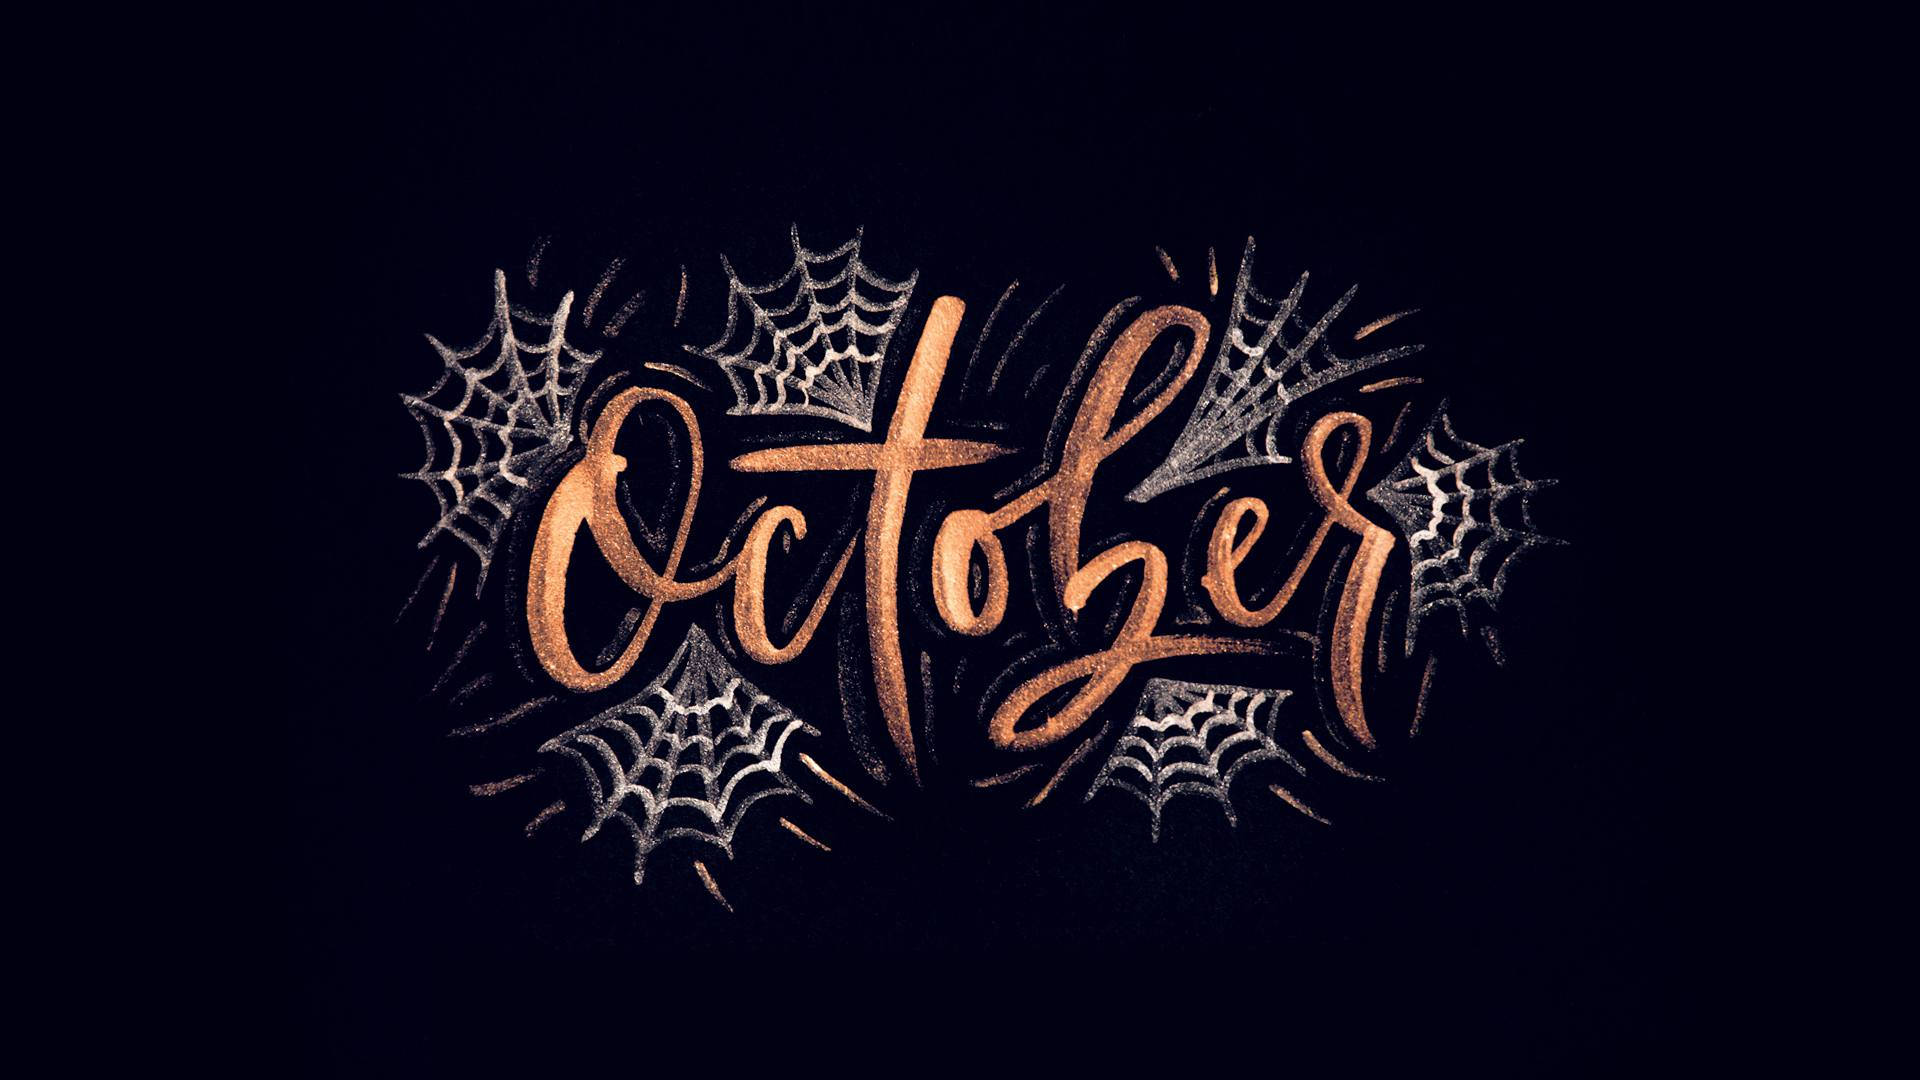 Sötestetisk Halloween-oktober Wallpaper